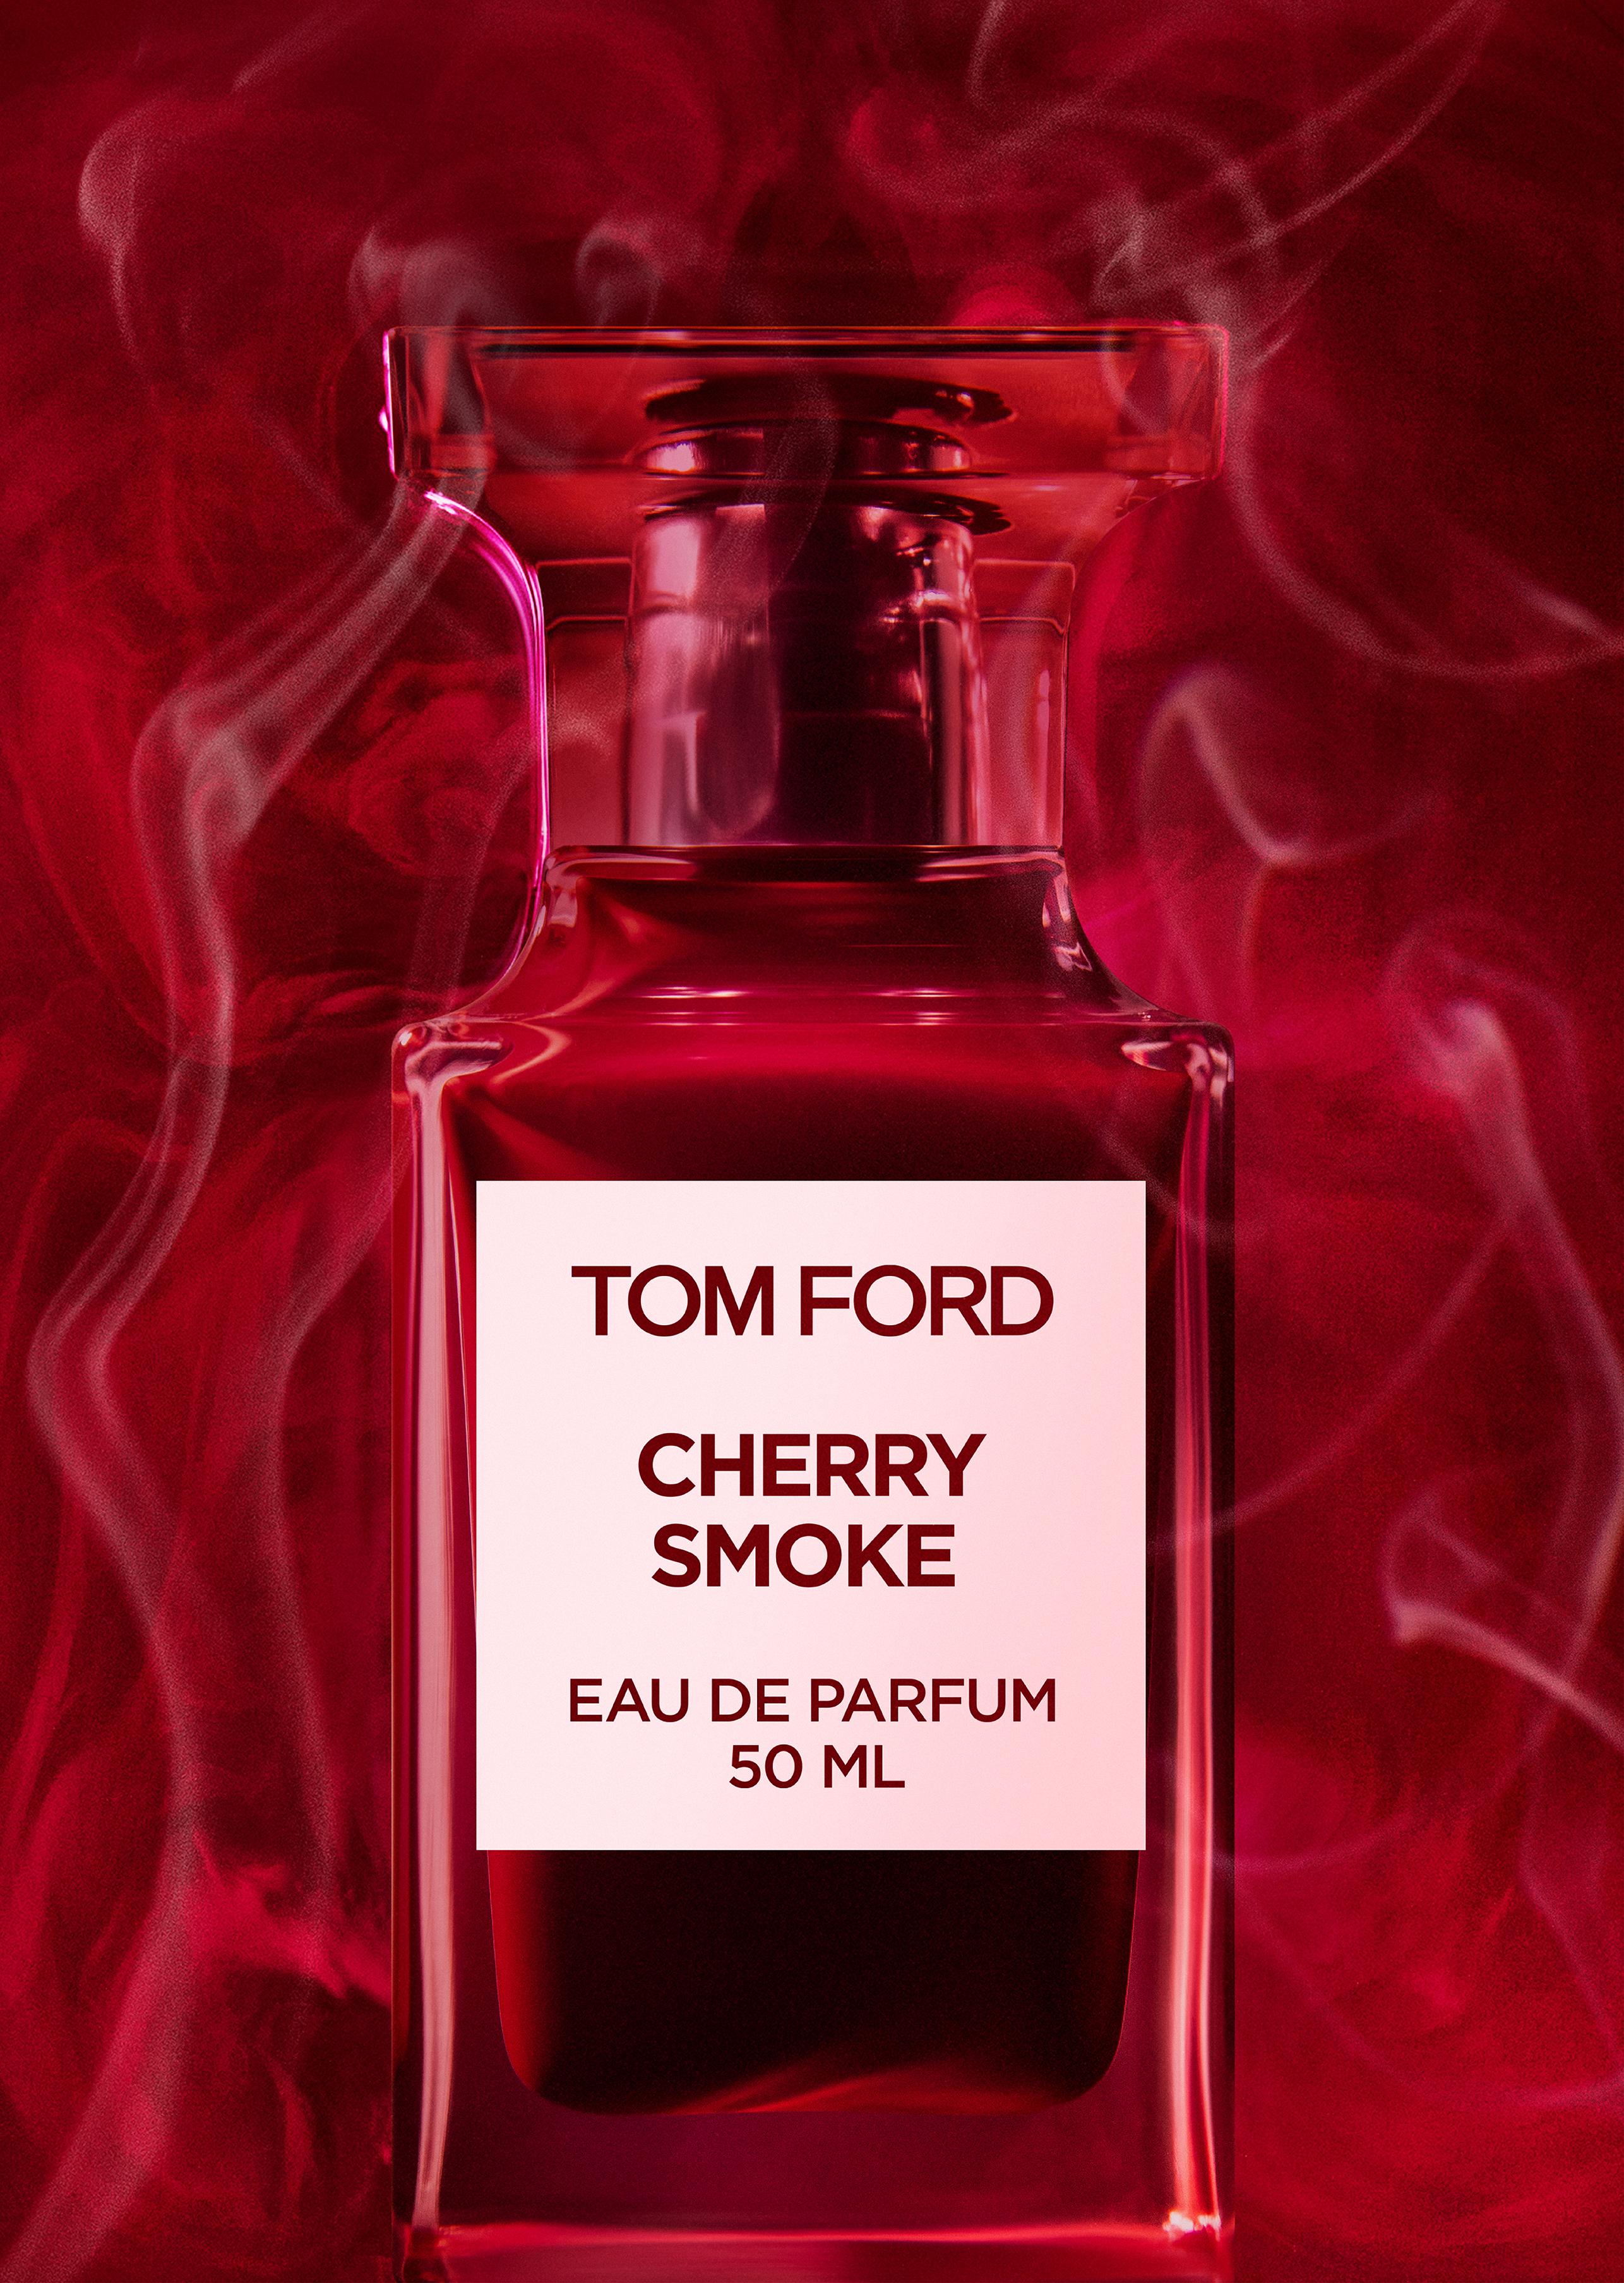 Tom Ford CHERRY SMOKE EAU DE PARFUM | TomFord.com